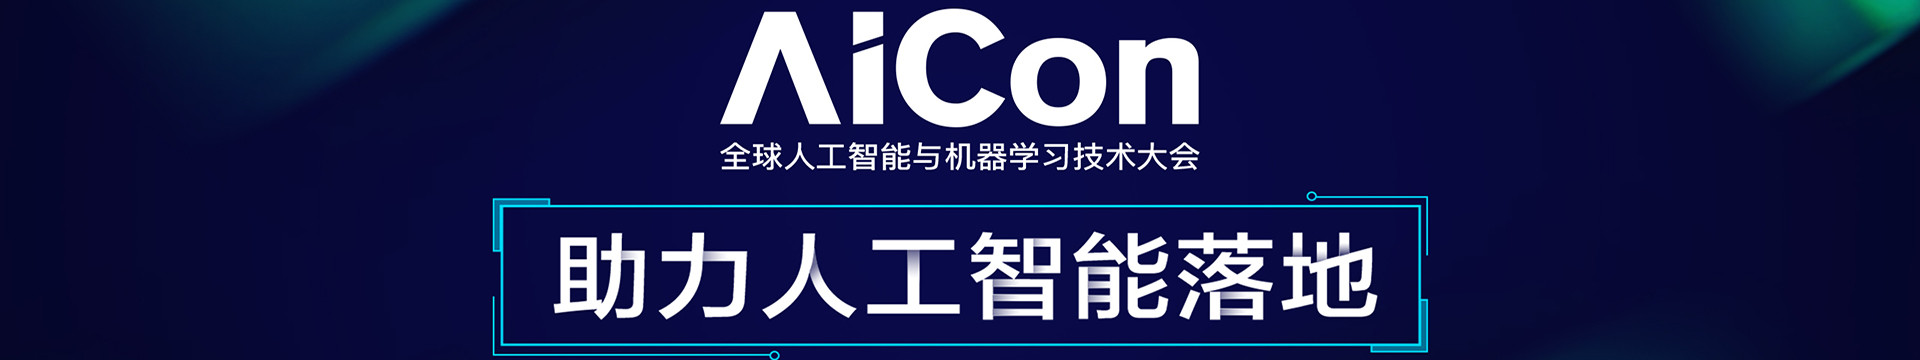 AICon 全球人工智能与机器学习技术大会2018